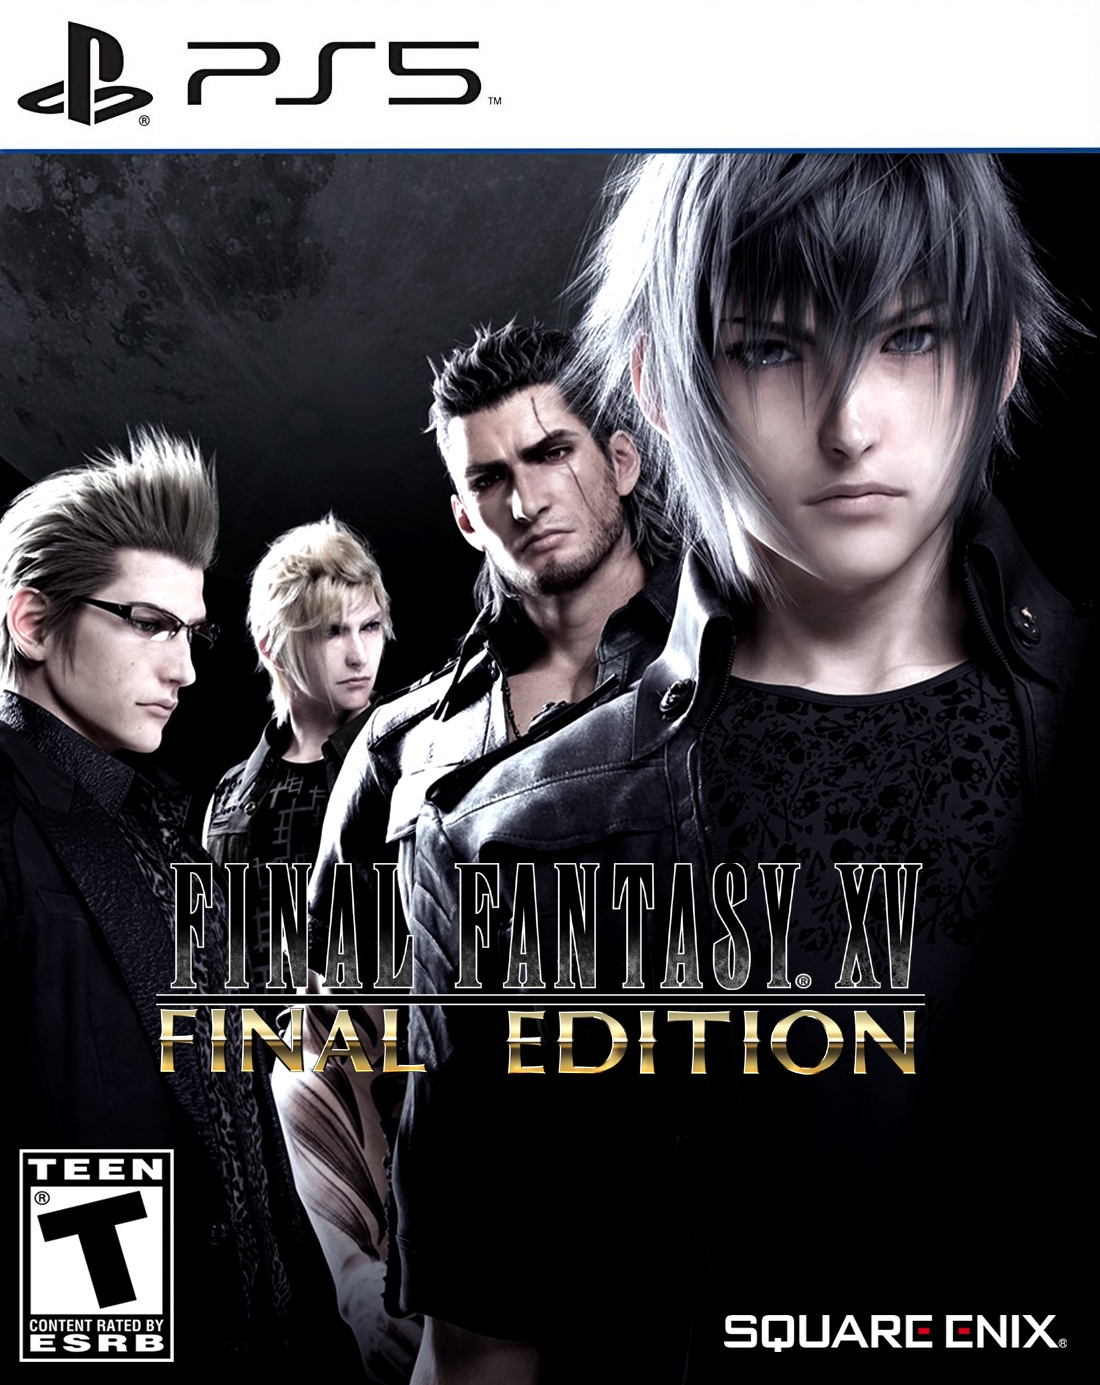 Final Fantasy XV: Final Edition box cover